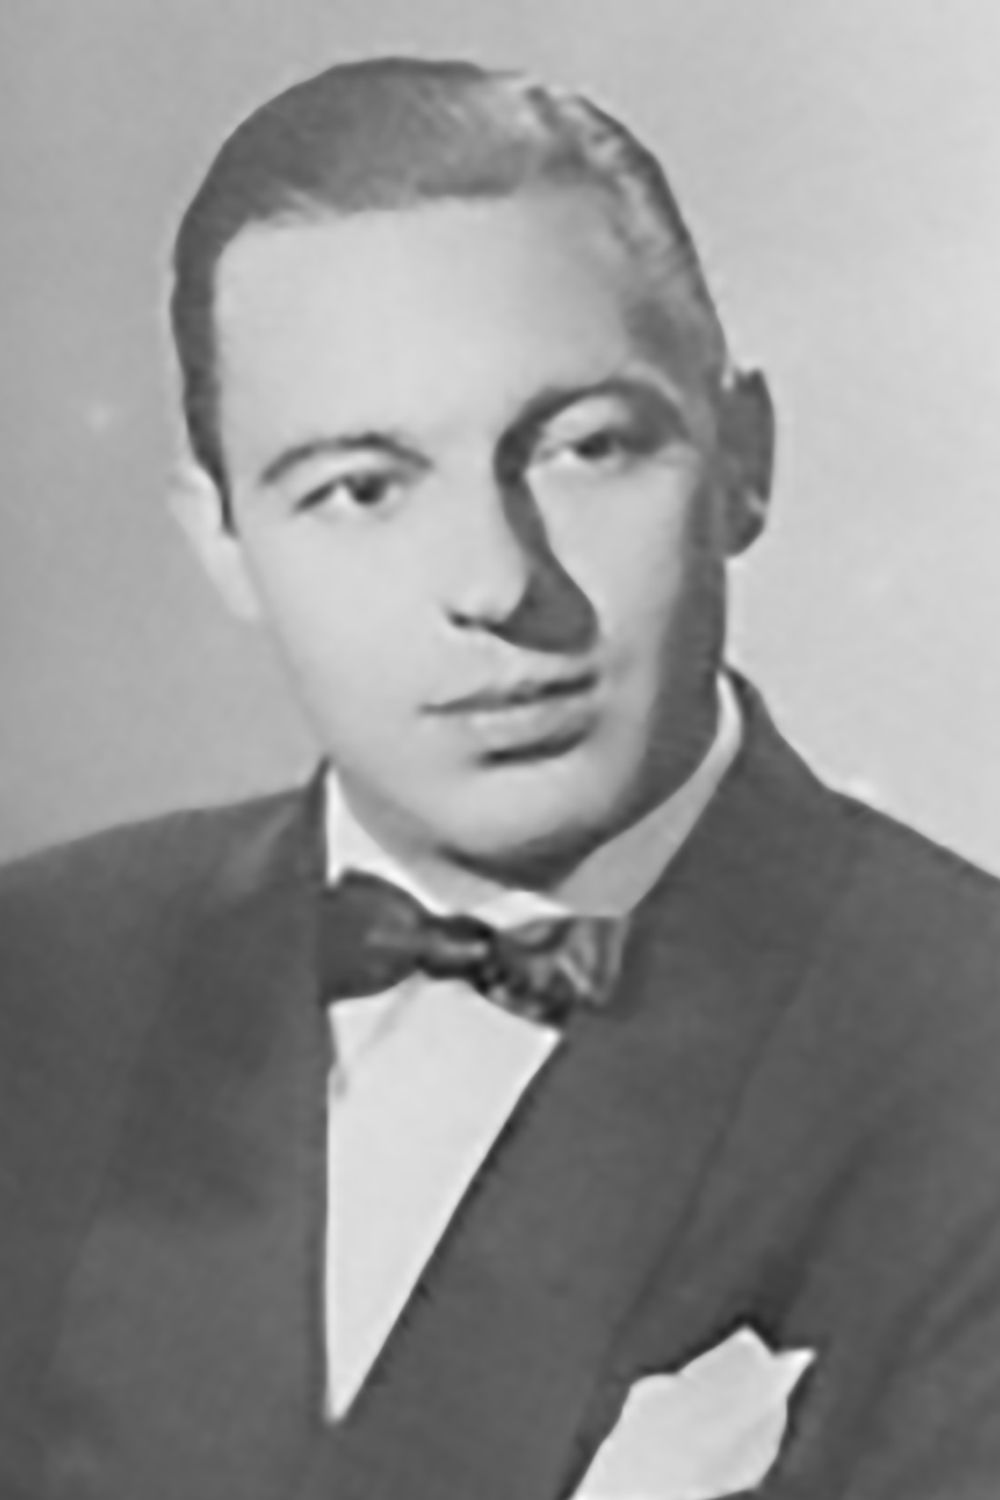 Alfredo Malerba, Argentine Tango musician and composer.